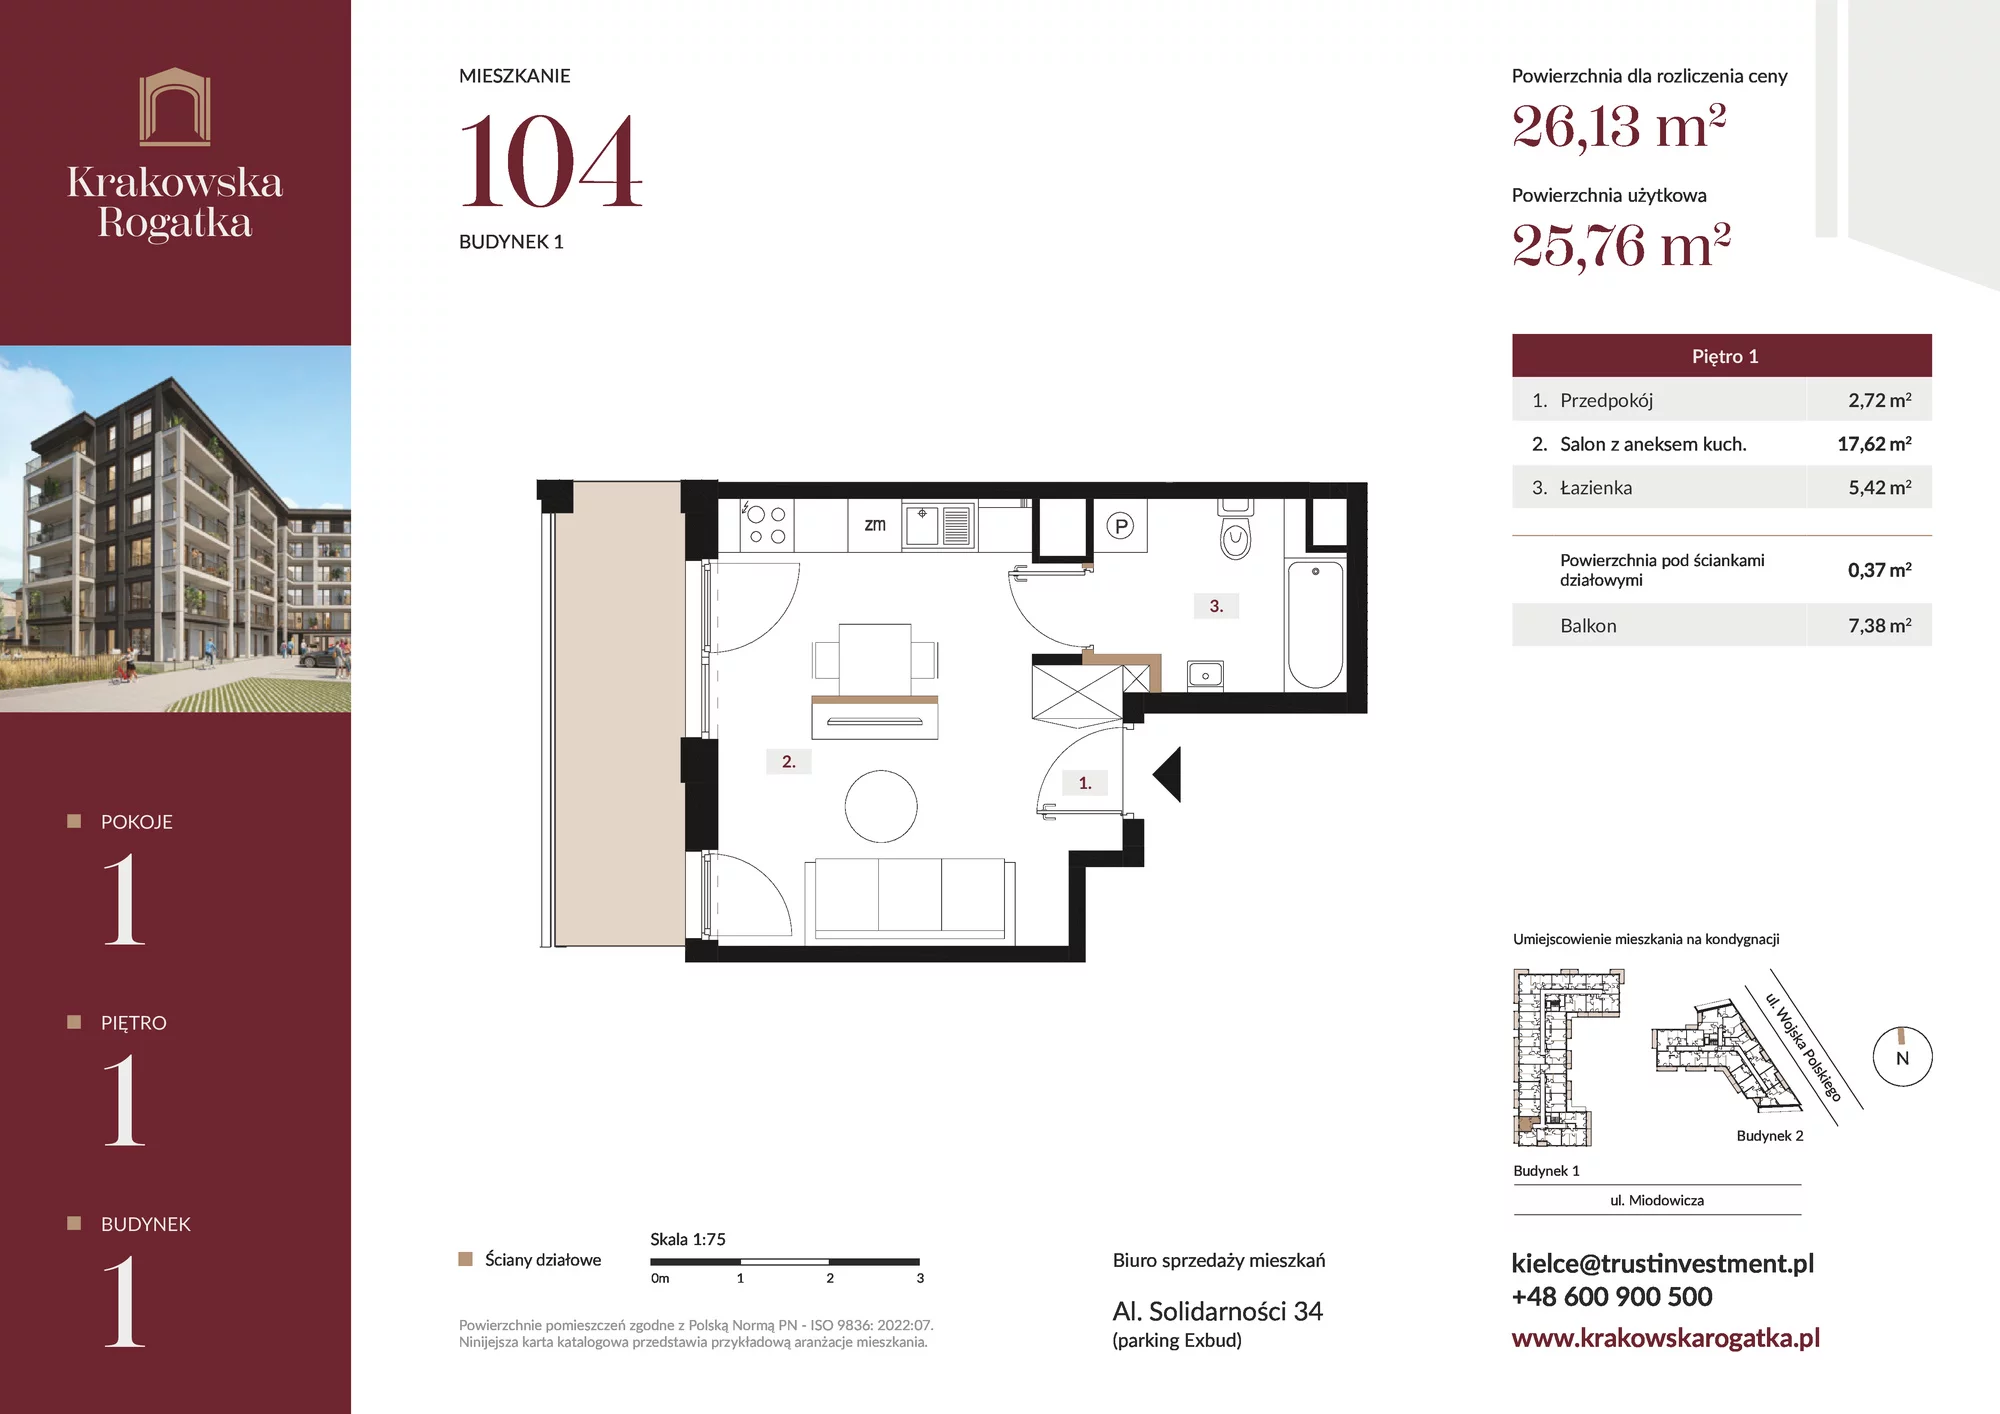 Mieszkanie 26,13 m², piętro 1, oferta nr Budynek 1 Mieszkanie 104, Krakowska Rogatka, Kielce, ul. Miodowicza 1